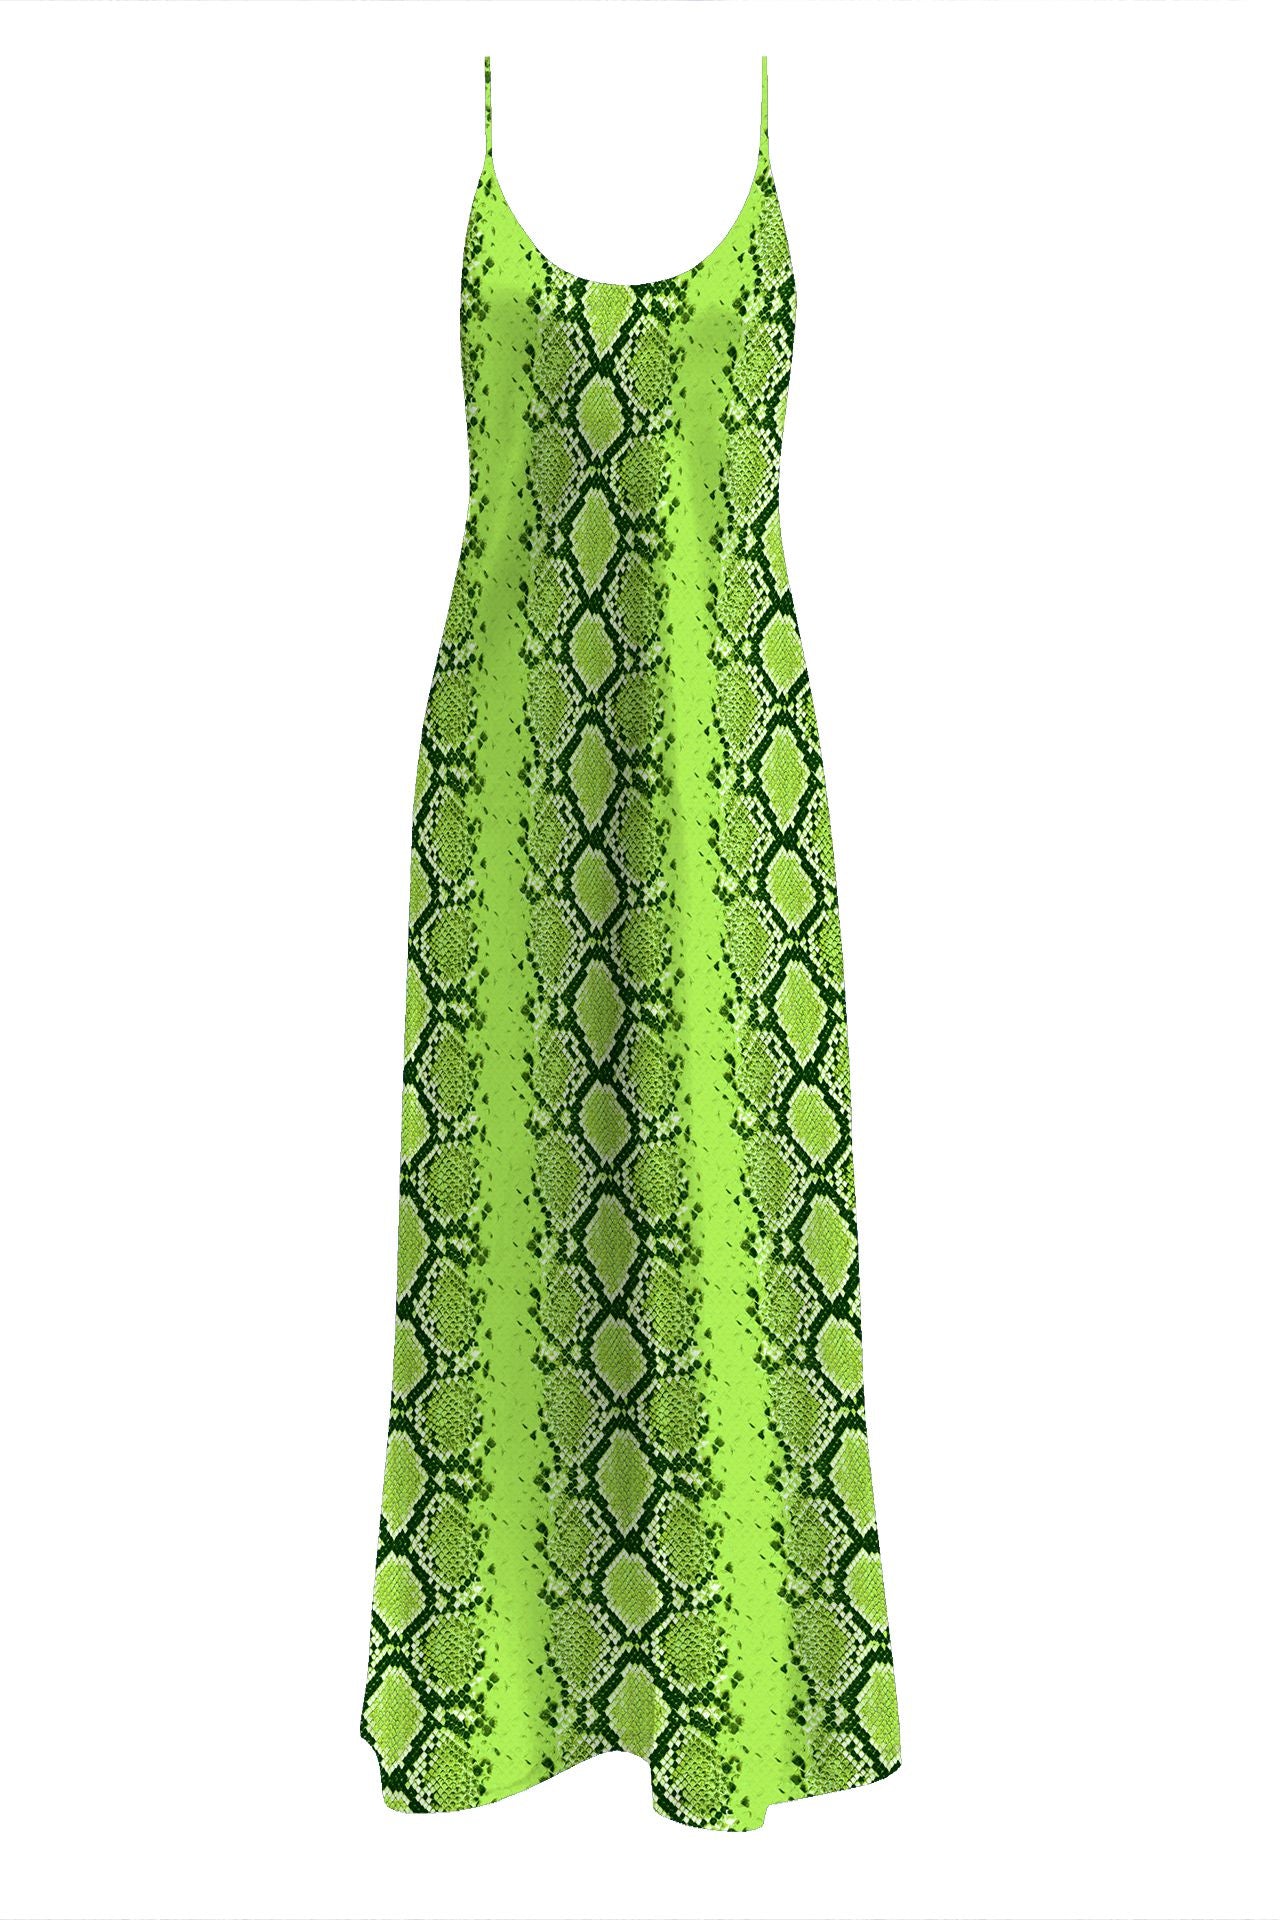  "Kyle X Shahida" "floor length slip dress" "green silk cami dress" "long slips for dresses"